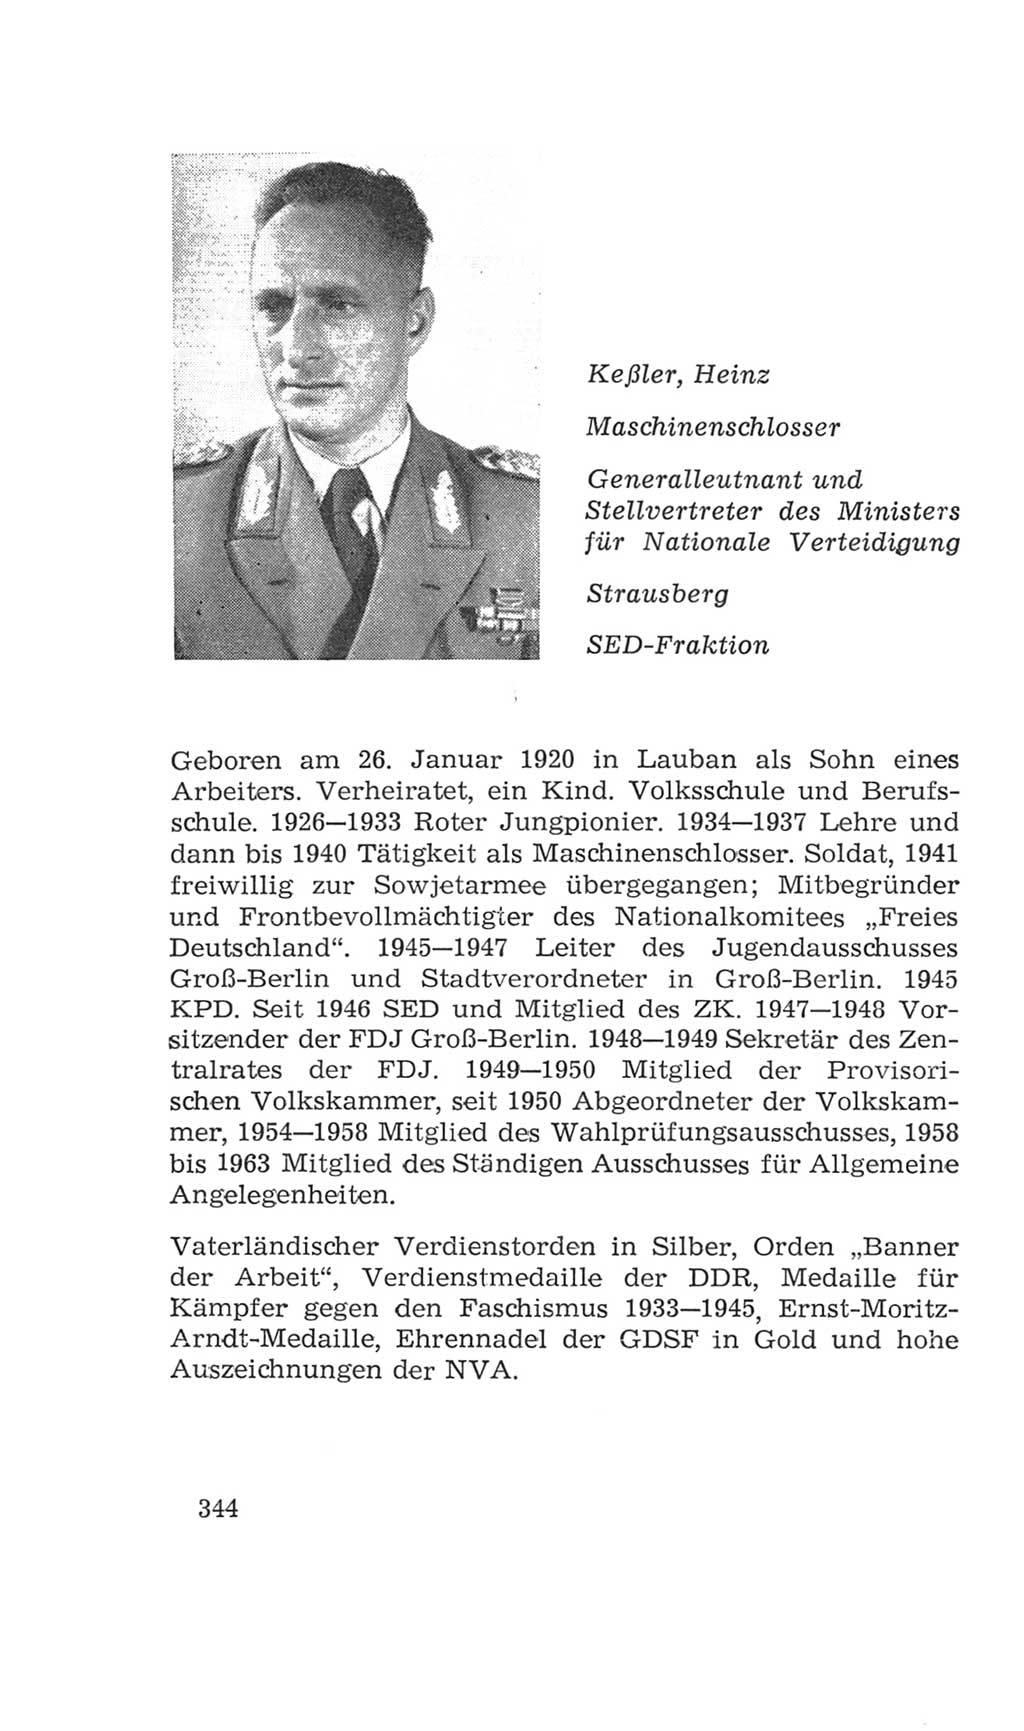 Volkskammer (VK) der Deutschen Demokratischen Republik (DDR), 4. Wahlperiode 1963-1967, Seite 344 (VK. DDR 4. WP. 1963-1967, S. 344)